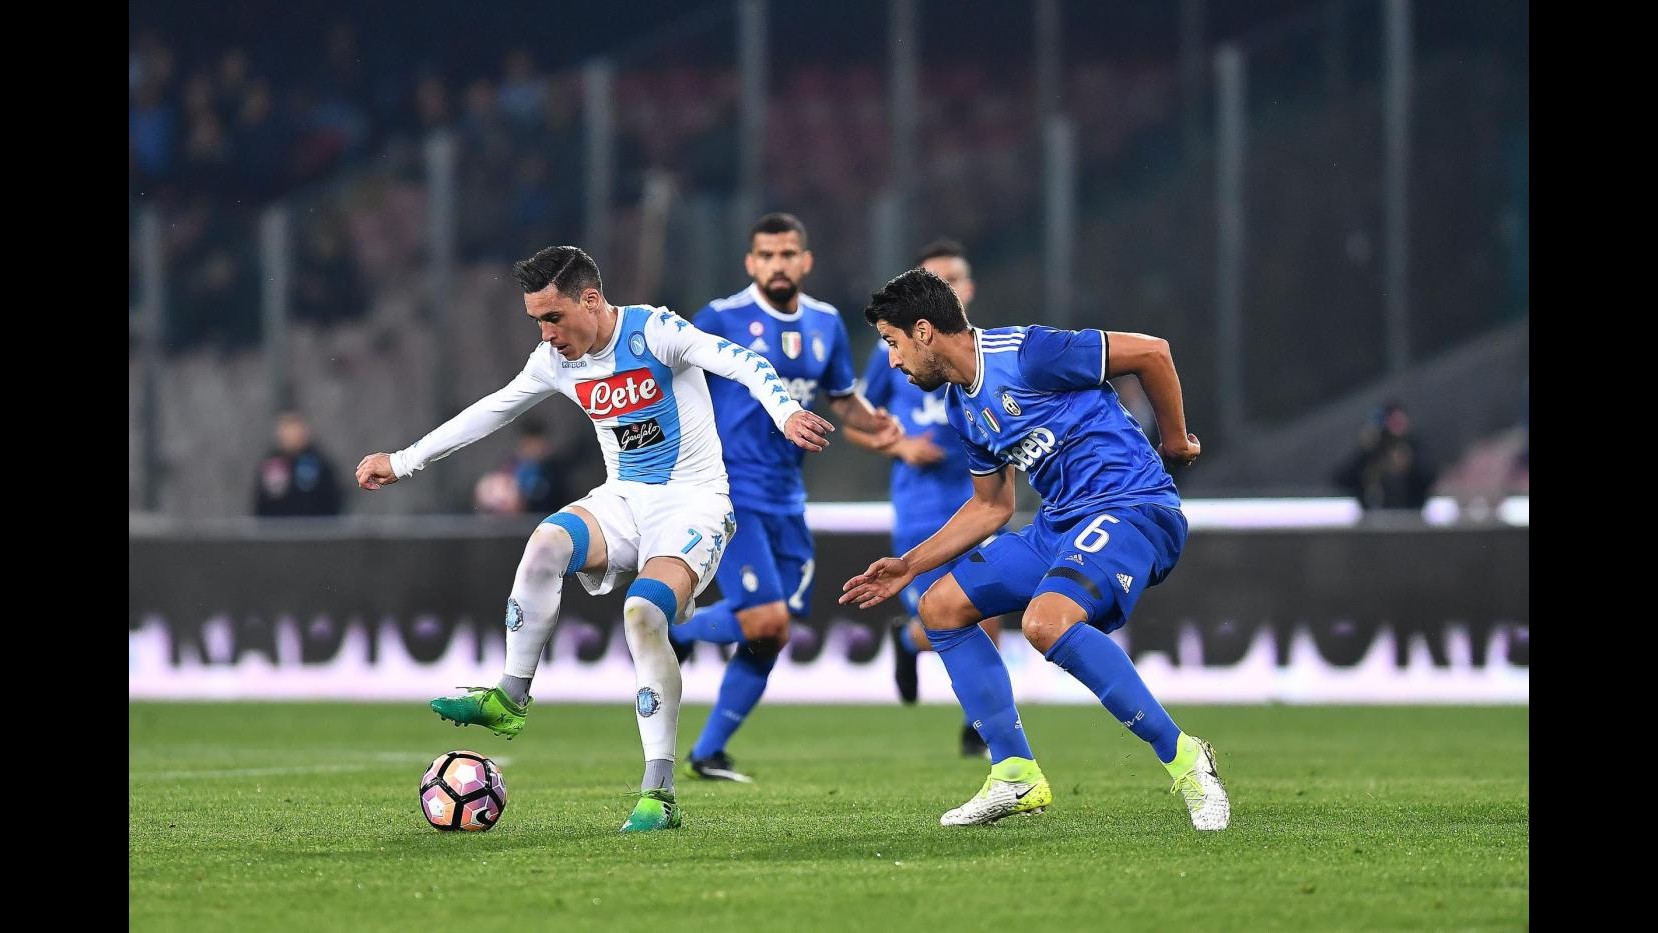 FOTO Coppa Italia, Juve ko 3-2 a Napoli ma in finale